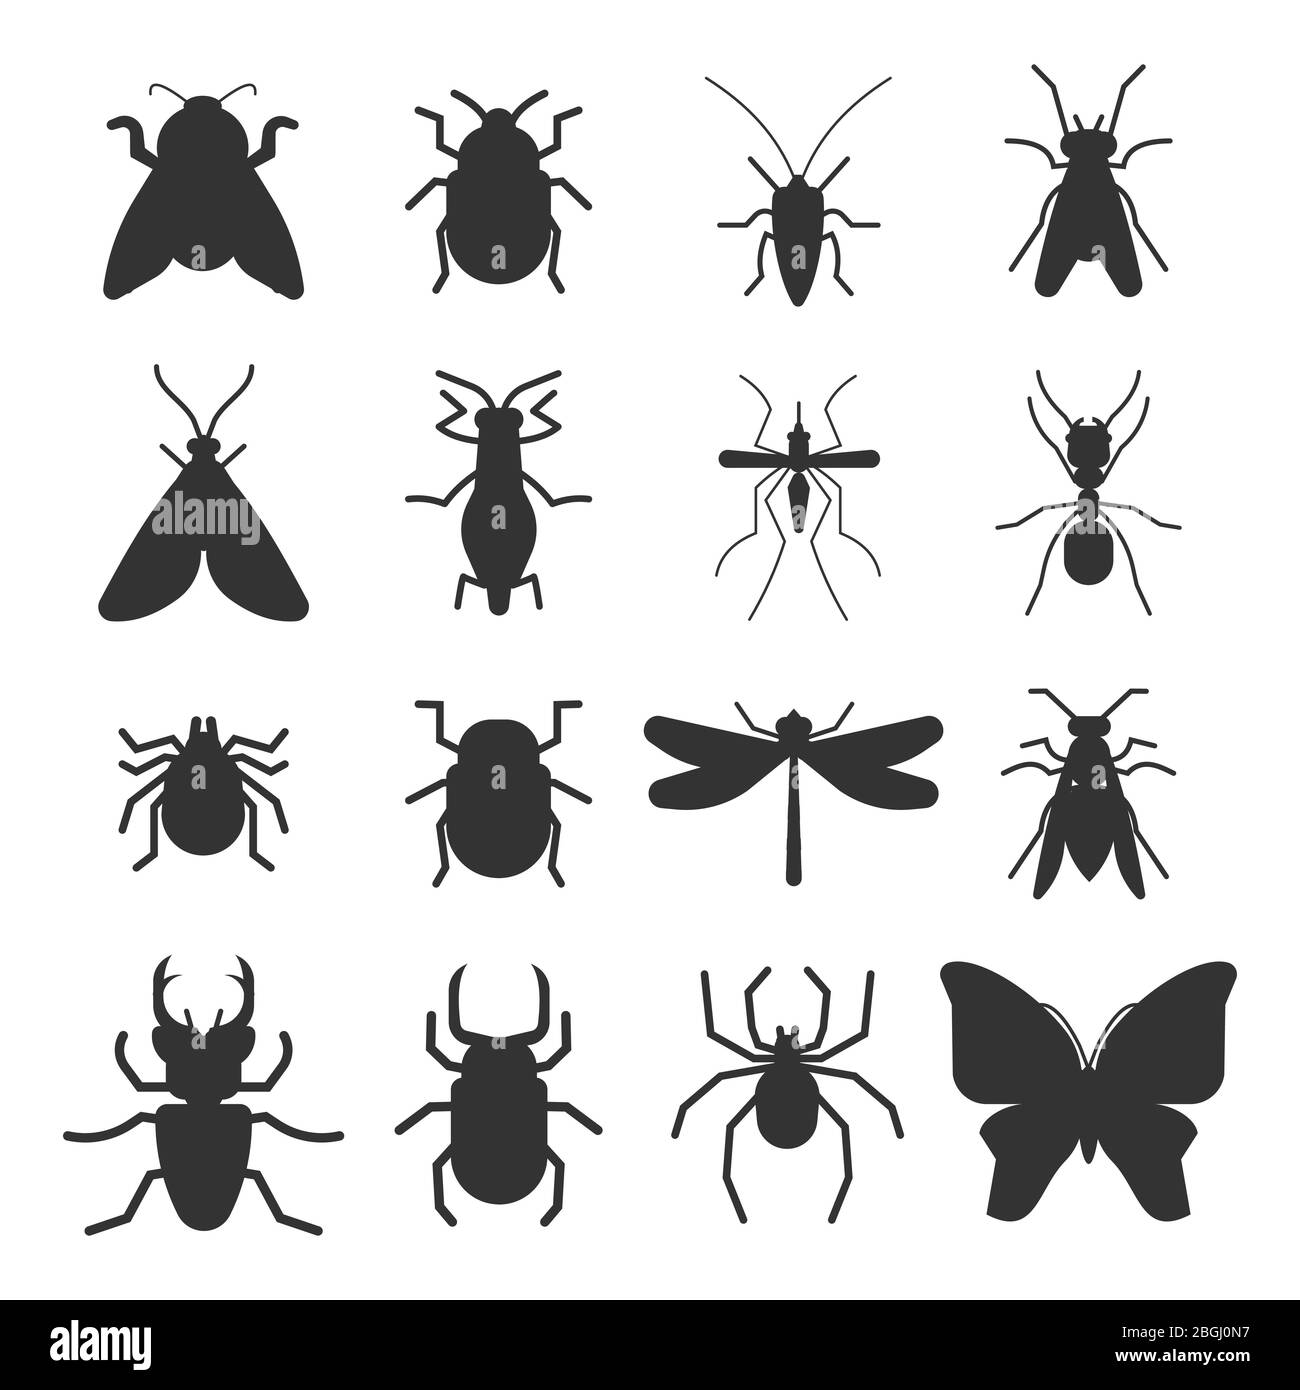 Insectos populares silueta iconos aislados sobre fondo blanco. Ilustración vectorial Ilustración del Vector